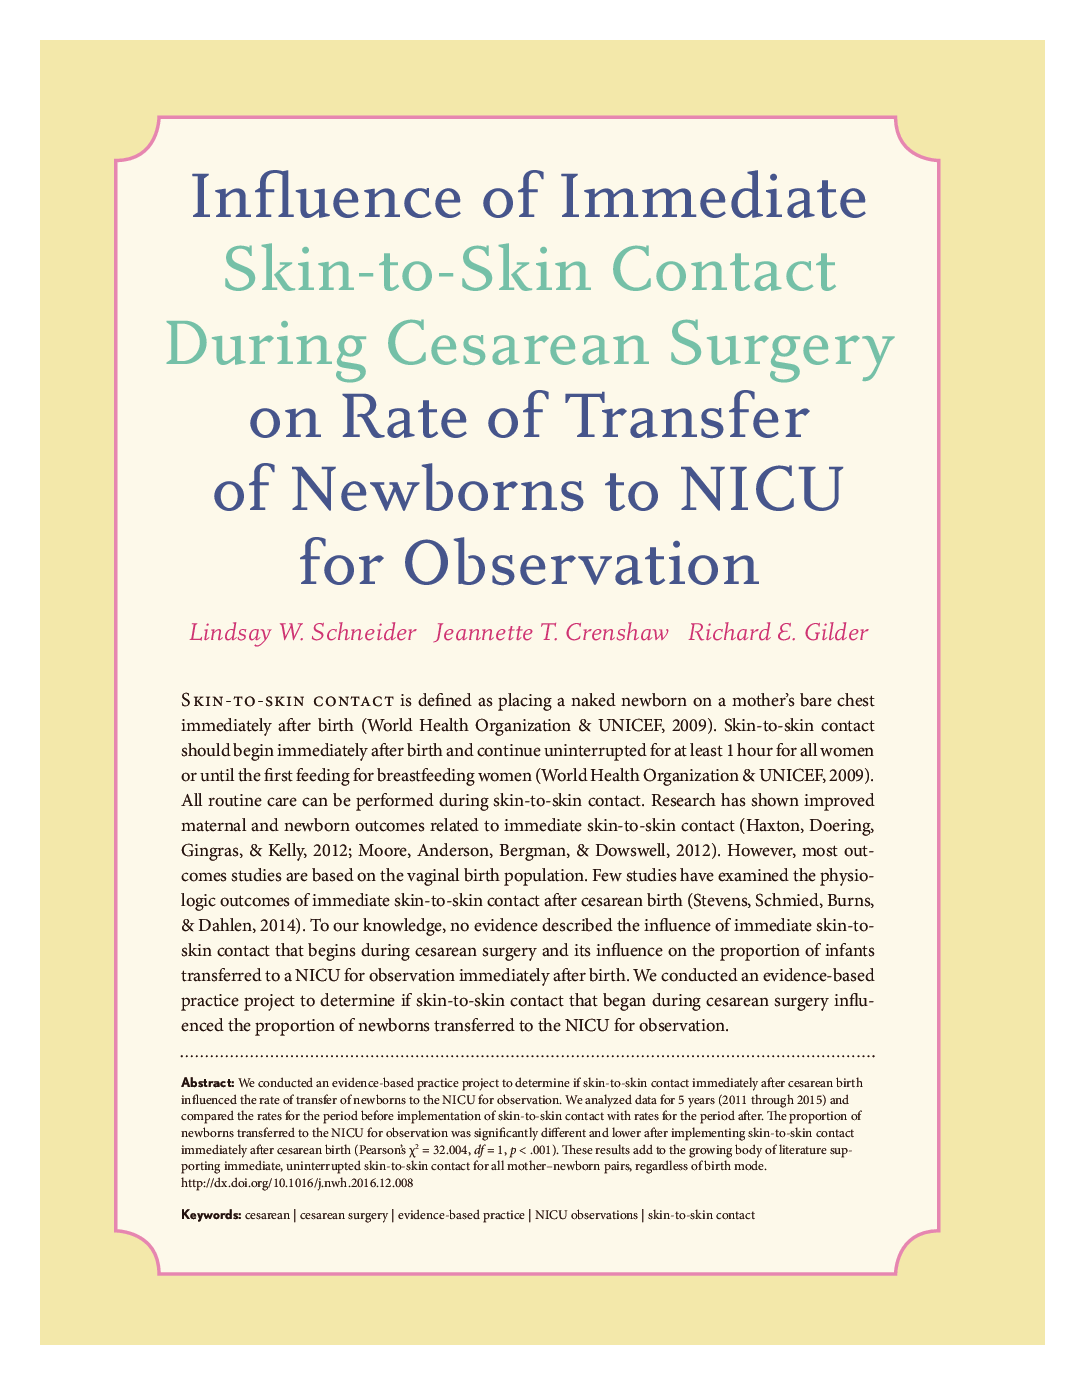 تأثیر ارتباط بی واسطه پوست با پوست در حین عمل سزارین بر میزان انتقال نوزادان به NICU  برای معاینه